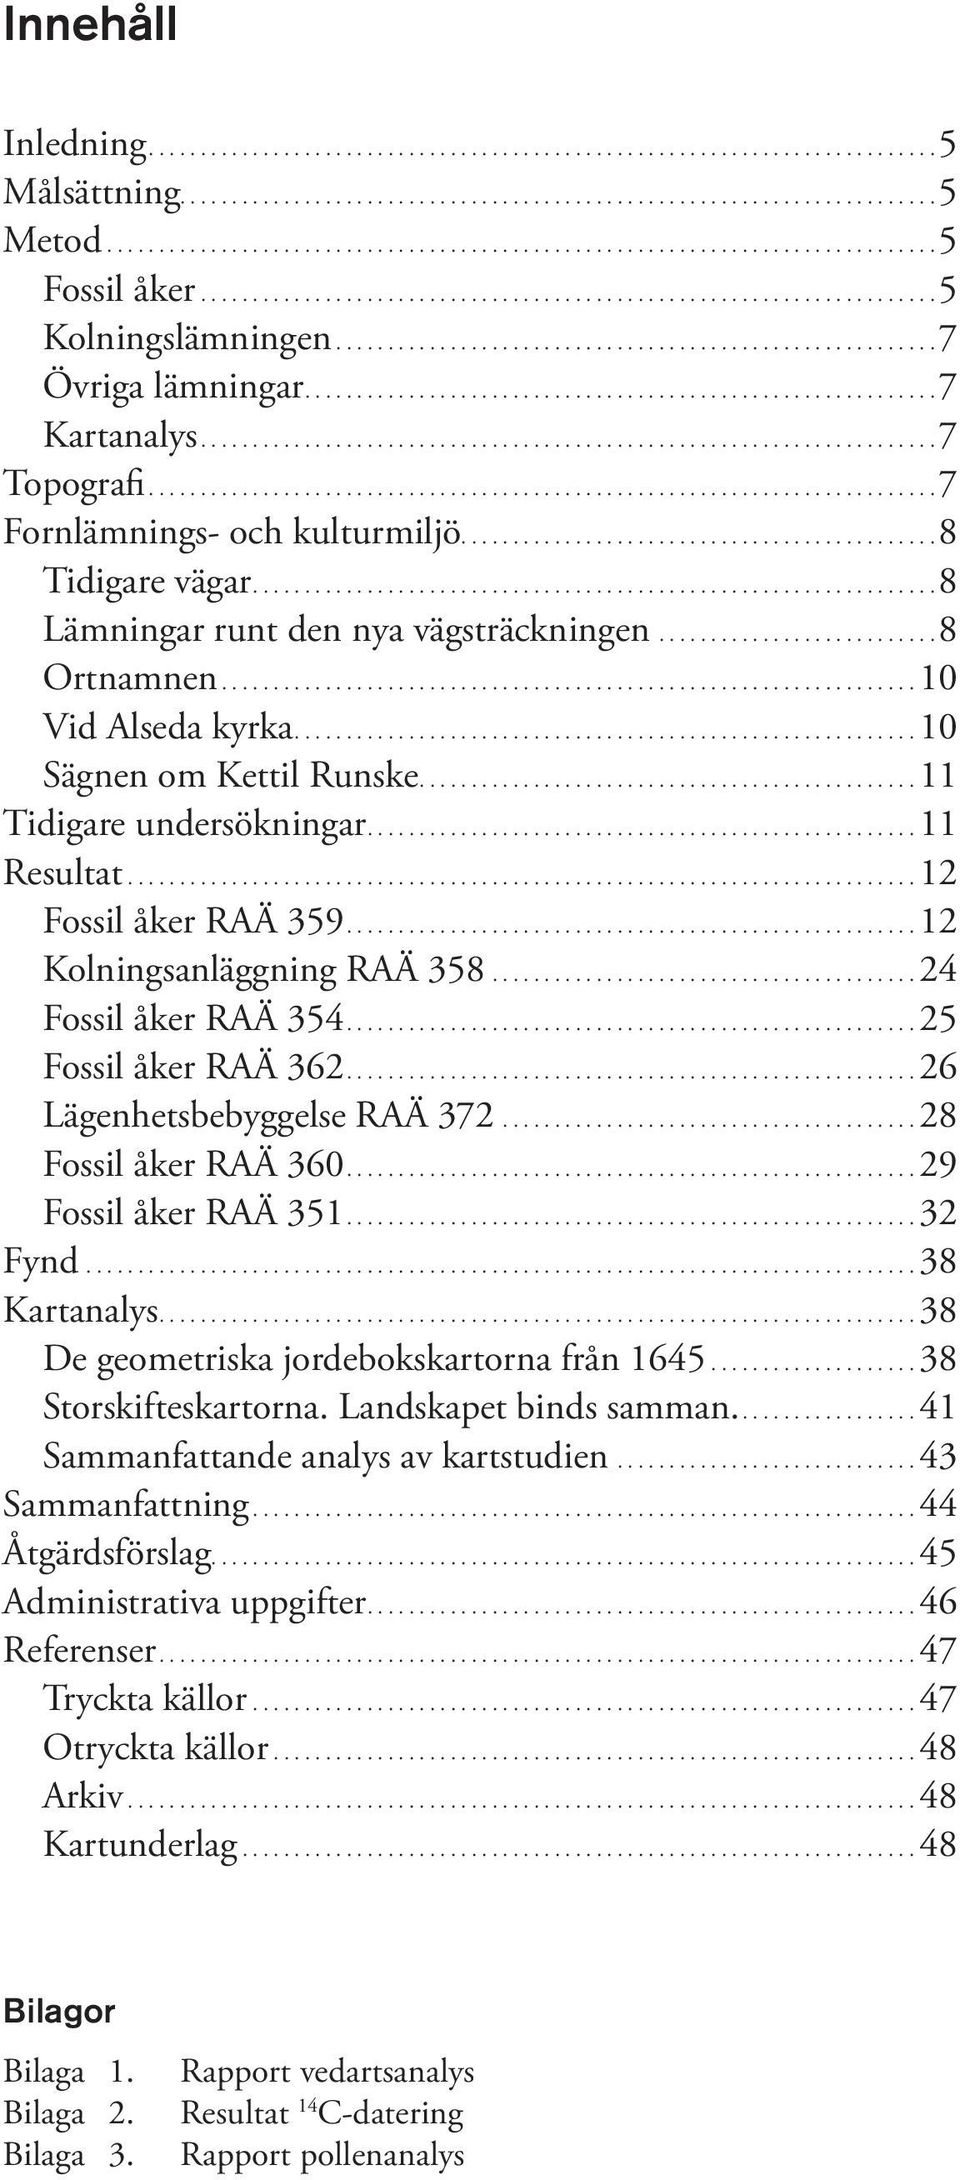 ...10 Sägnen om Kettil Runske....11 Tidigare undersökningar....11 Resultat....12 Fossil åker RAÄ 359....12 Kolningsanläggning RAÄ 358...24 Fossil åker RAÄ 354....25 Fossil åker RAÄ 362.